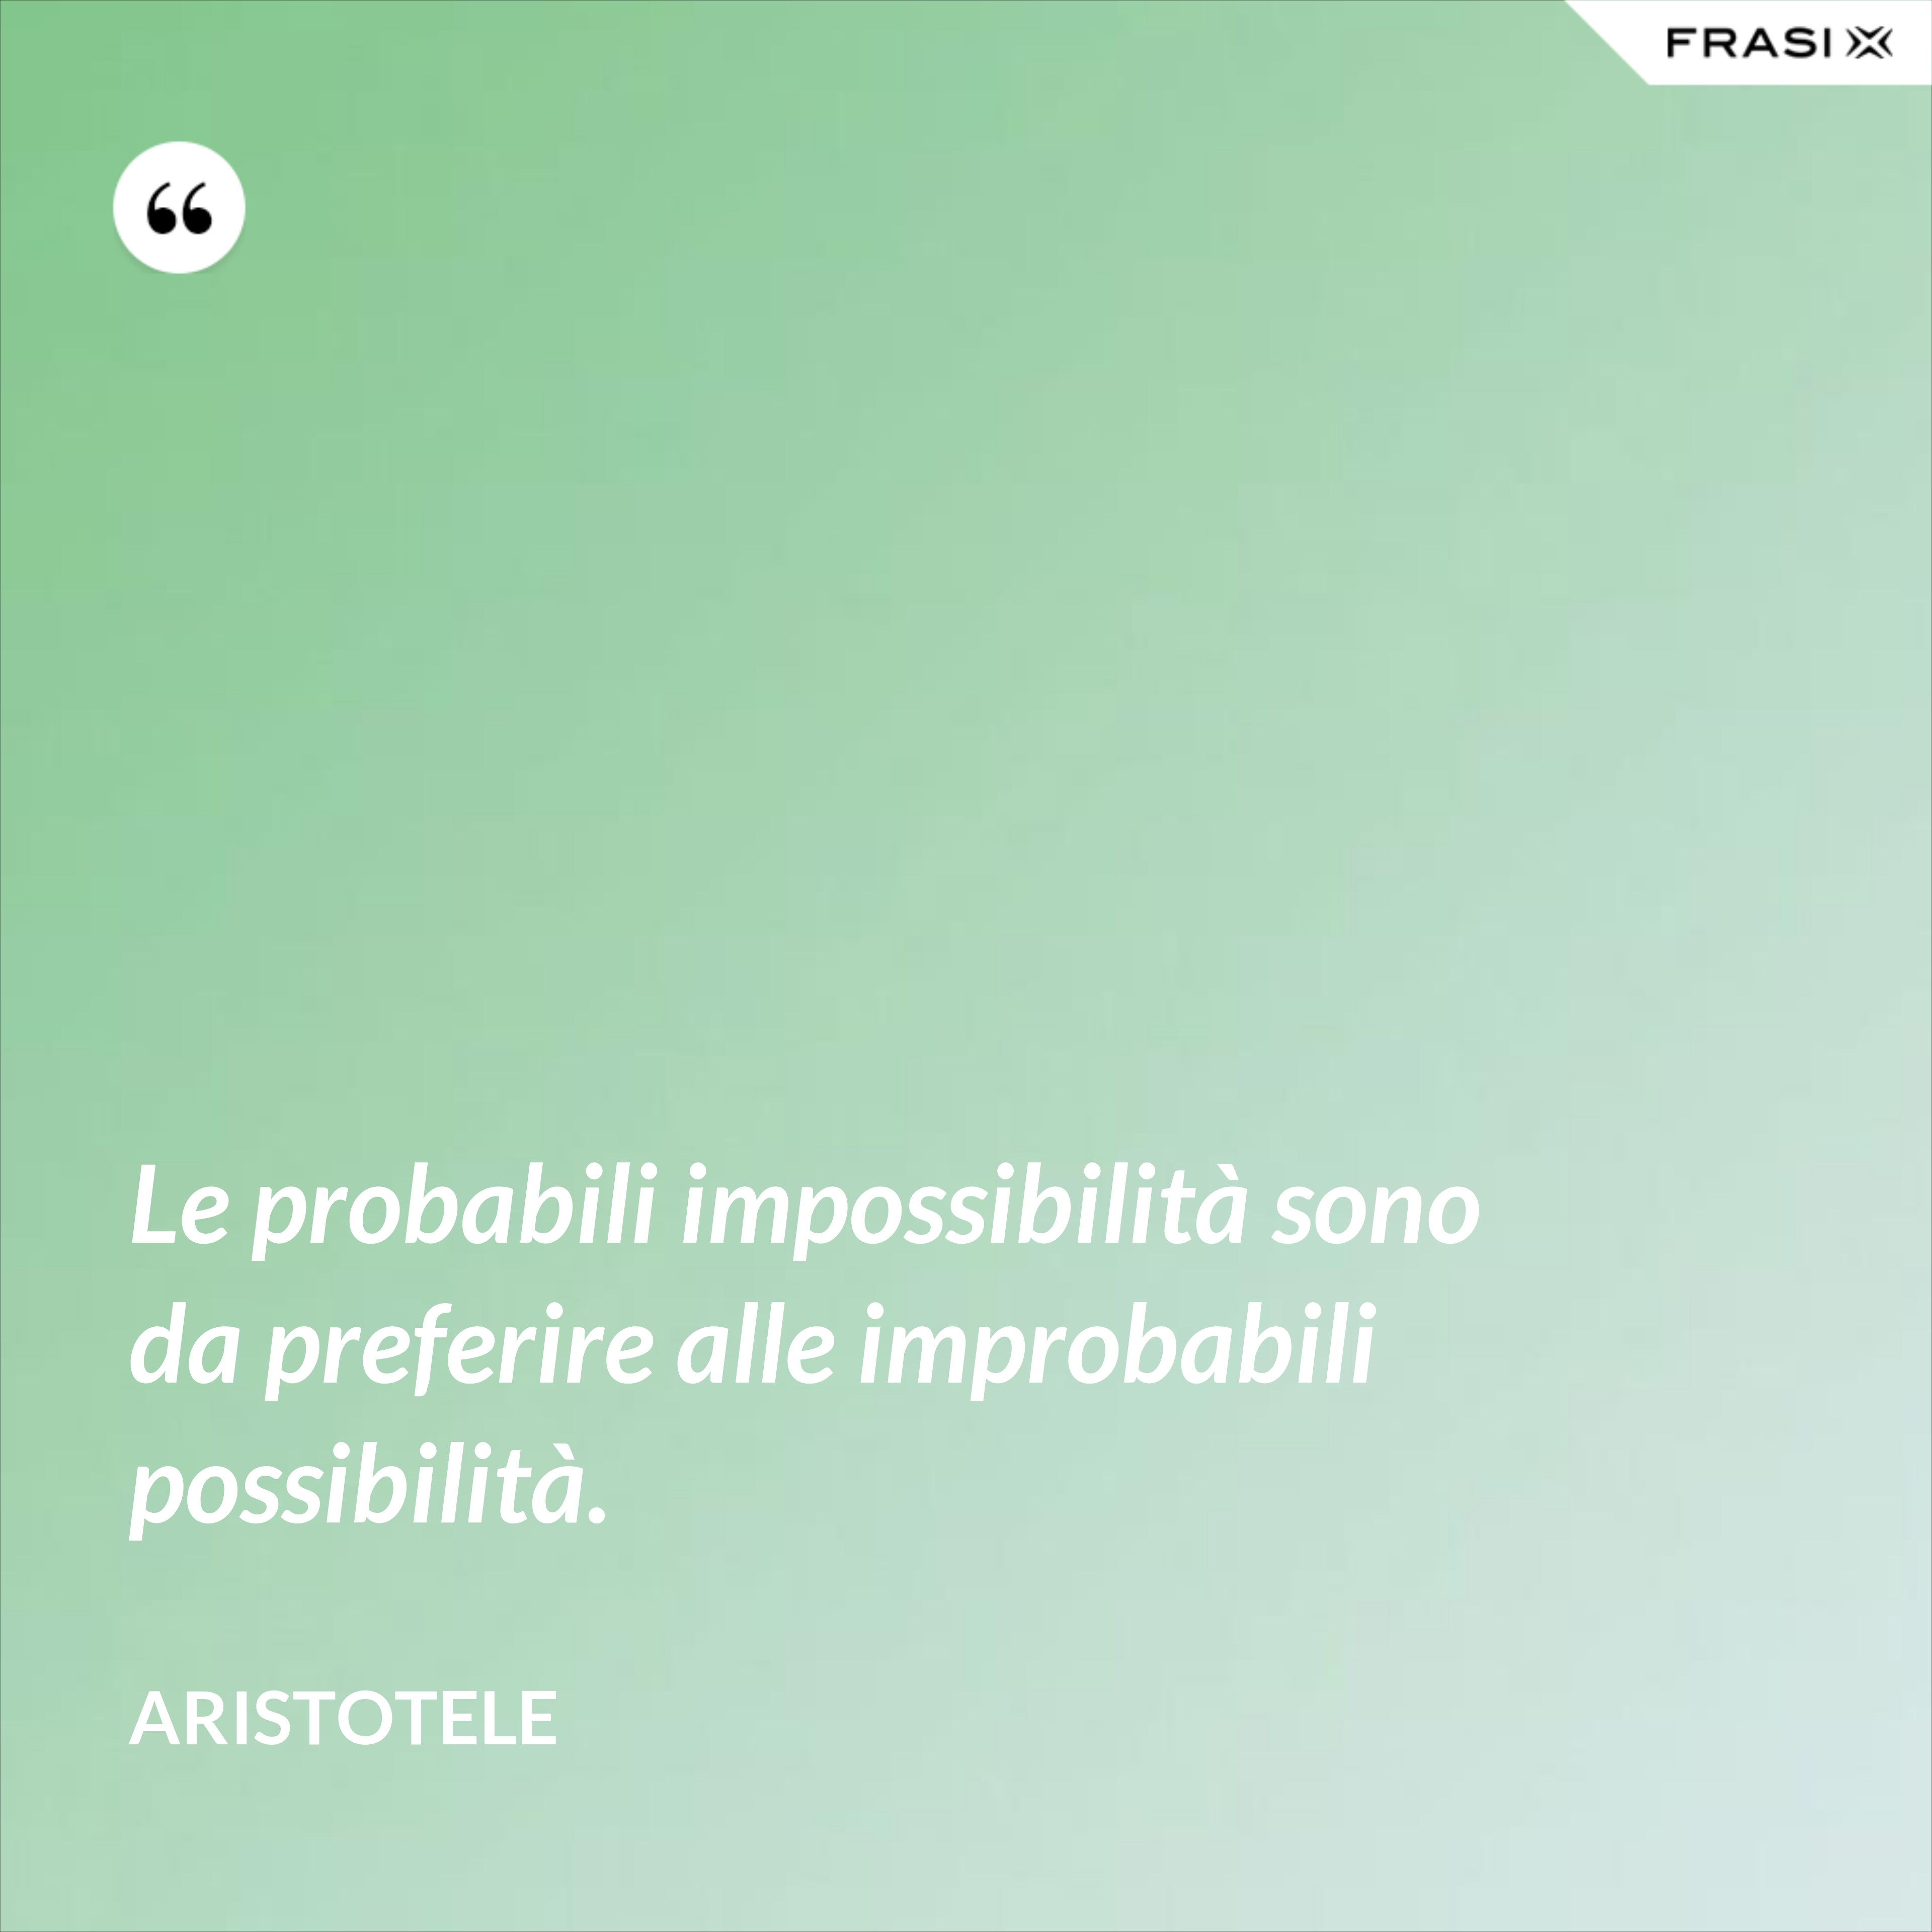 Le probabili impossibilità sono da preferire alle improbabili possibilità. - Aristotele